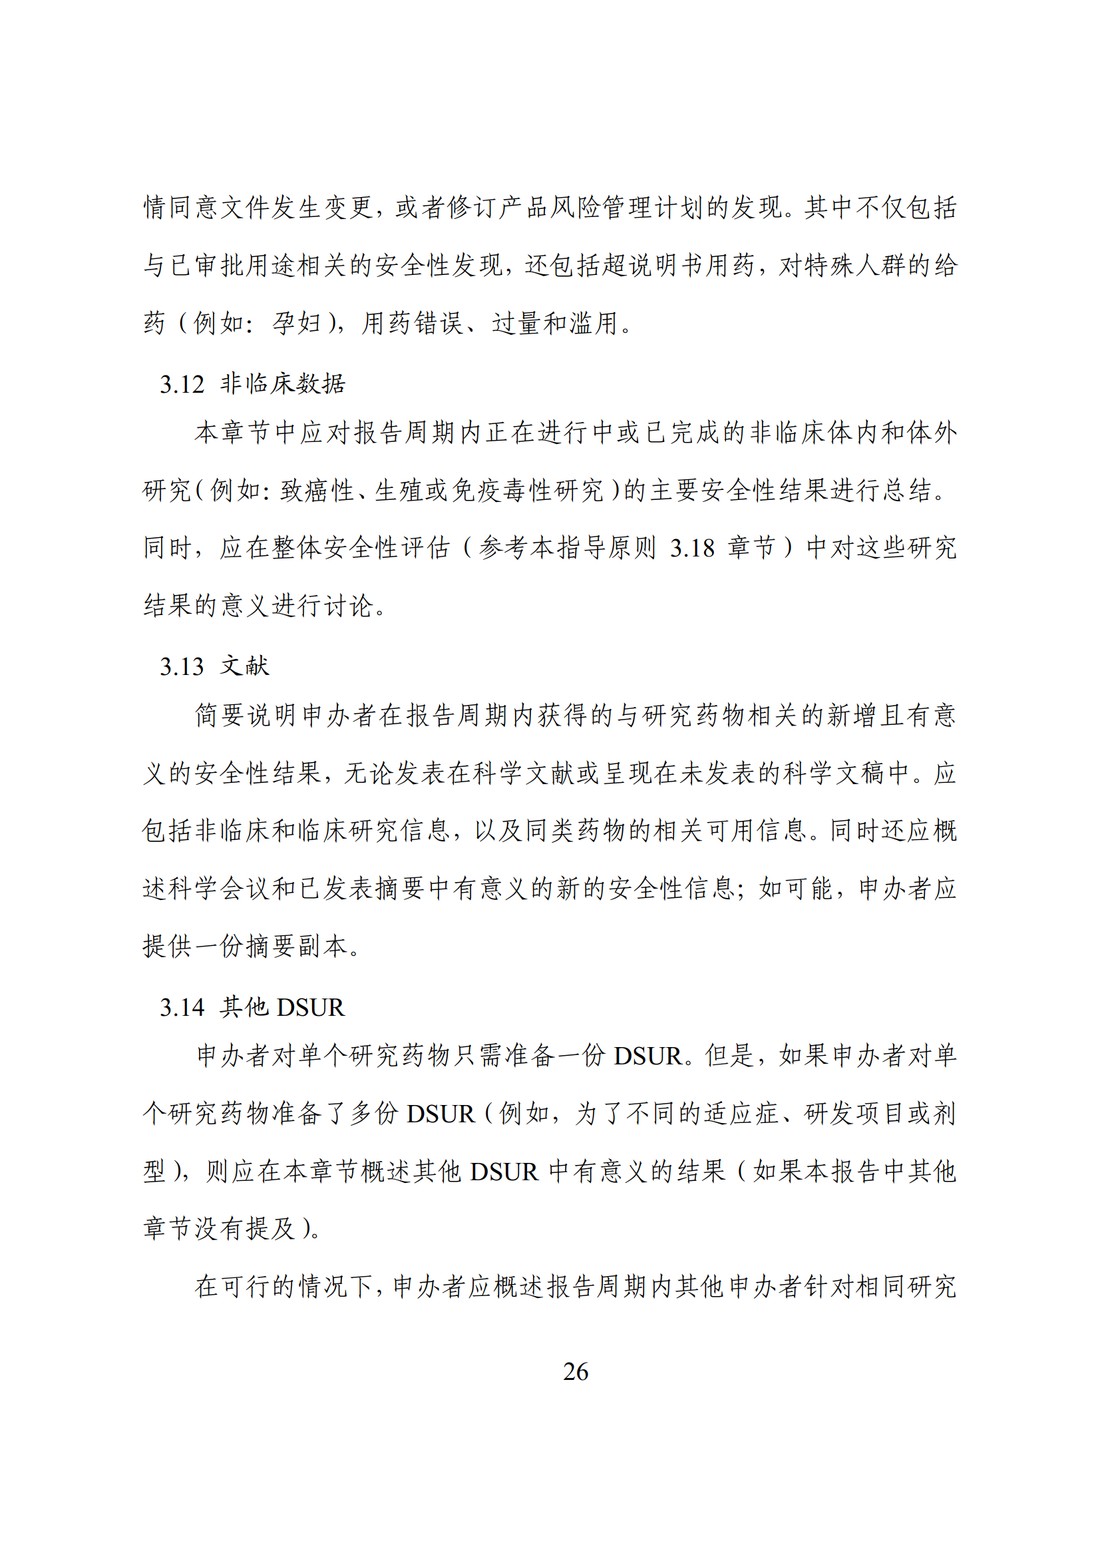 E2F 研发期间安全性更新报告(中文翻译公开征求意见稿)_31.jpg